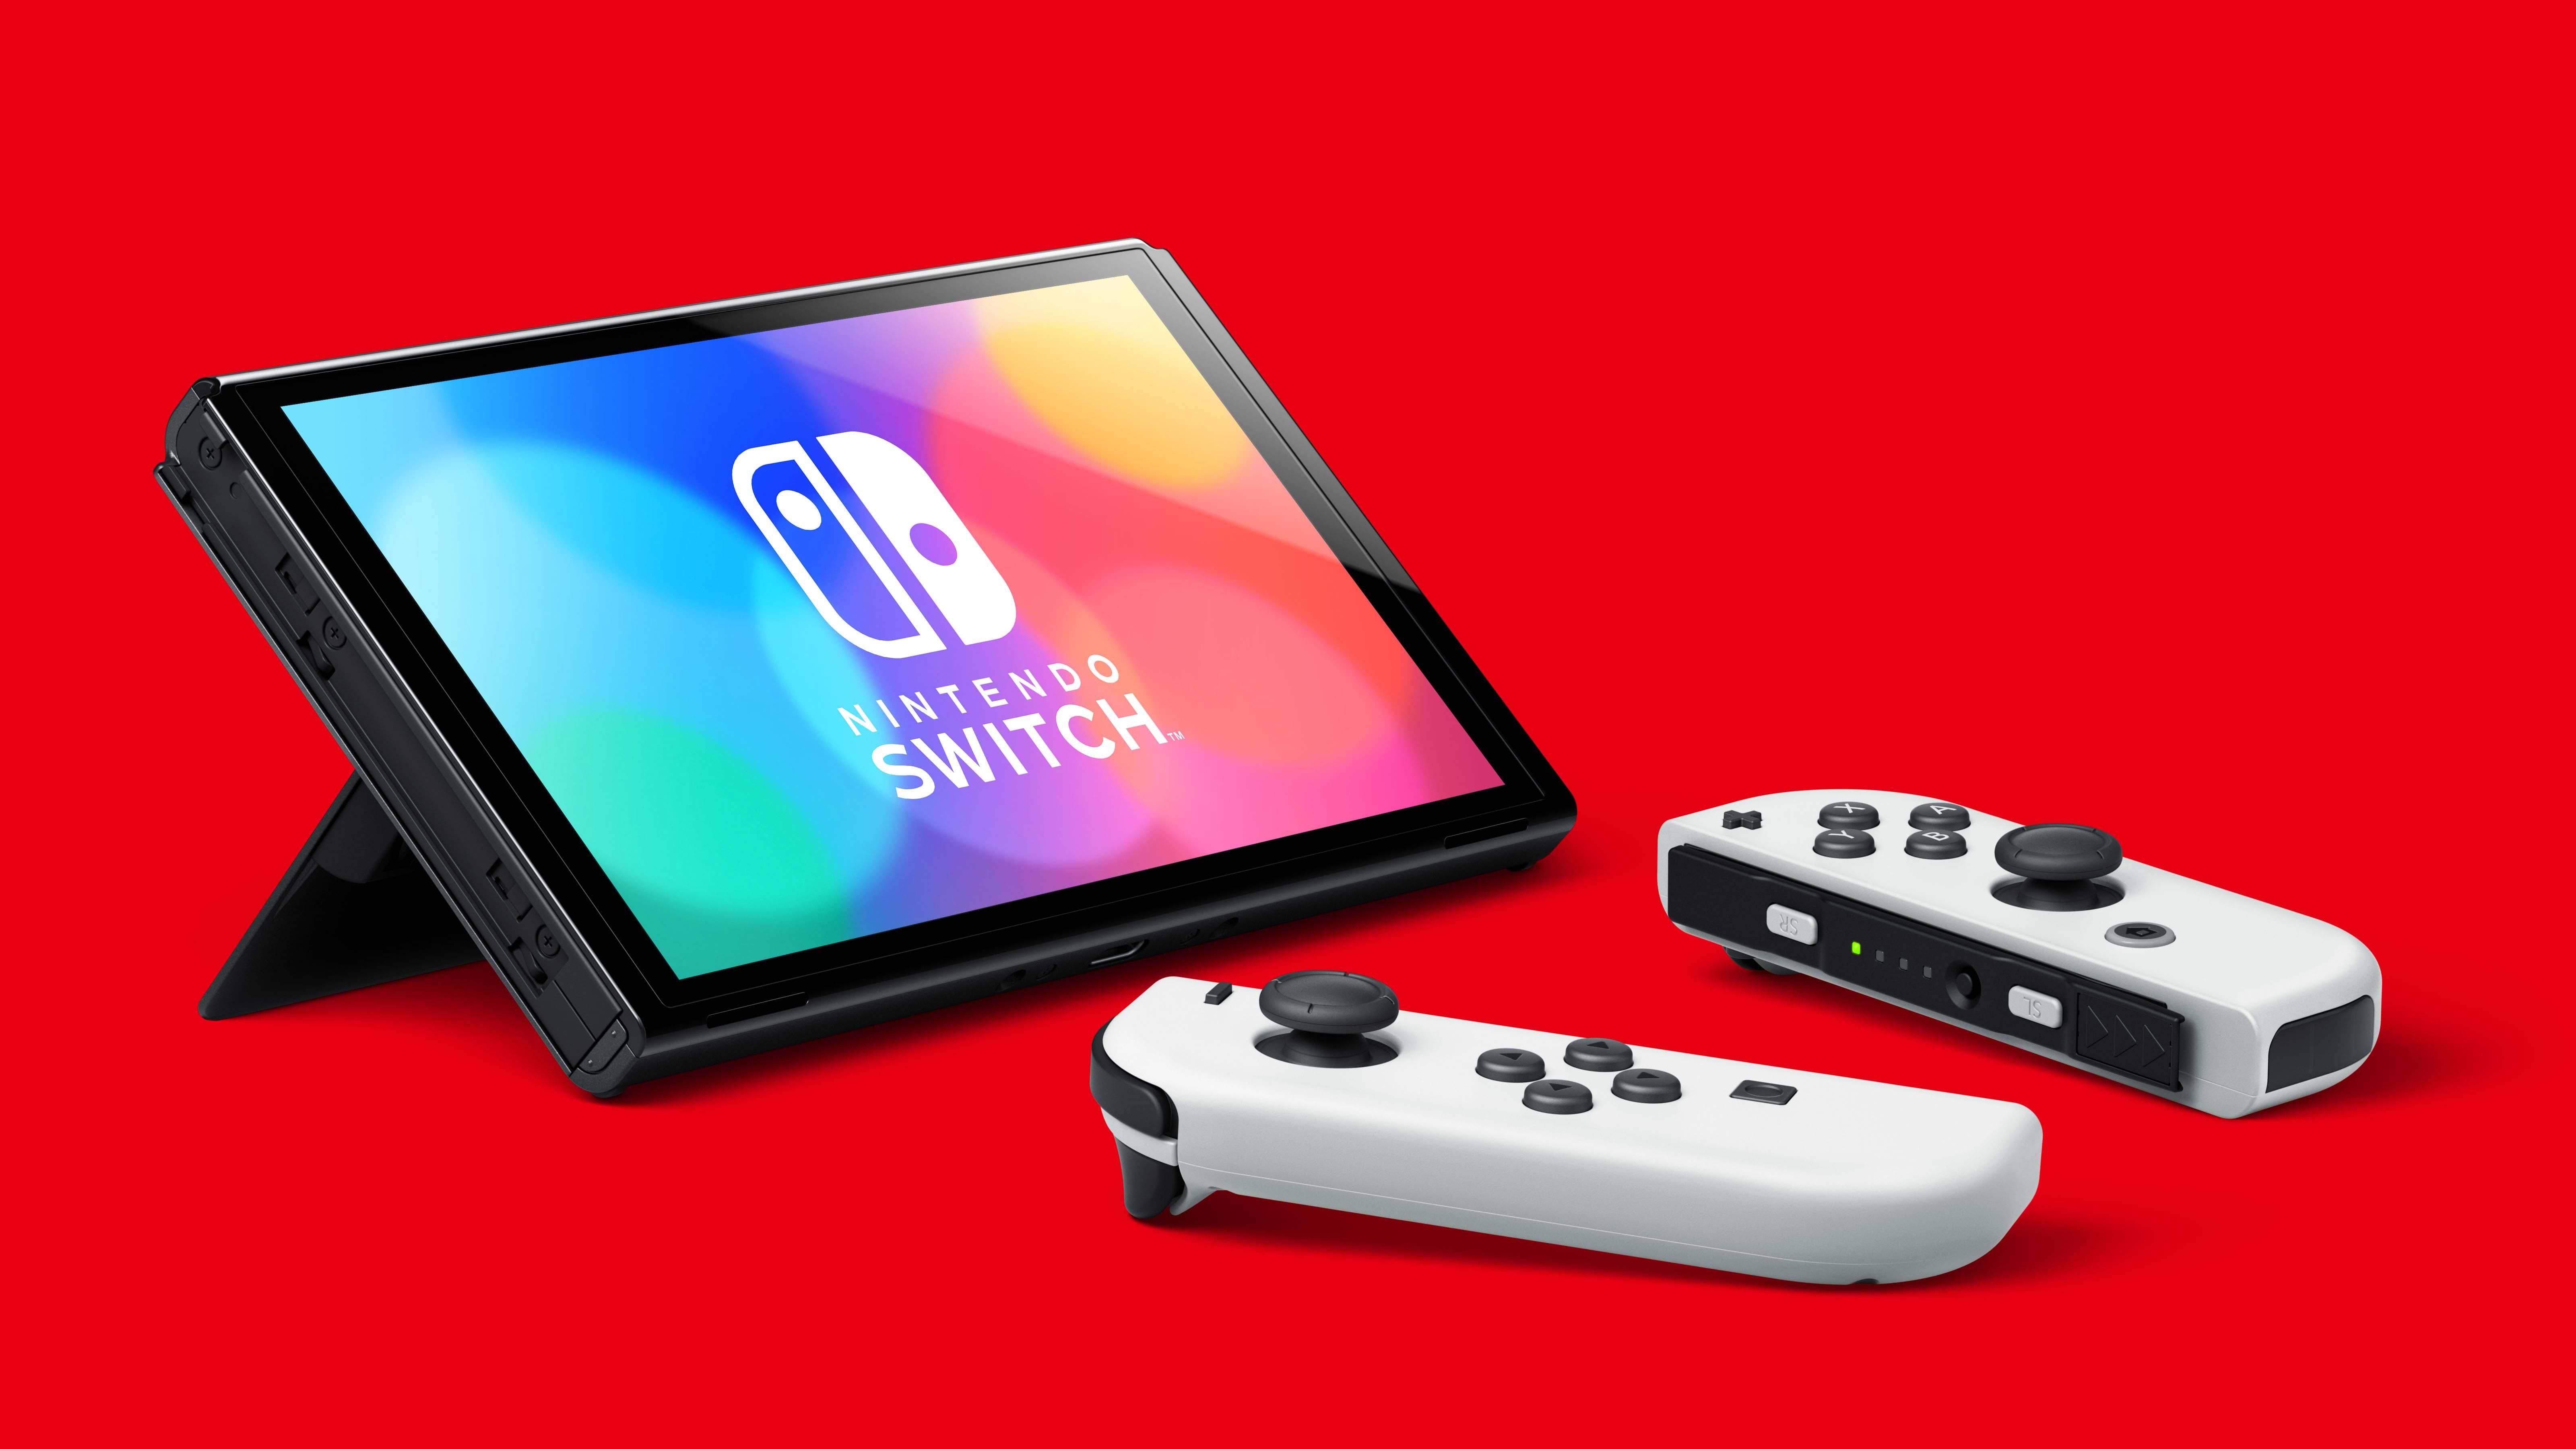 באנדל קונסולת Nintendo Switch OLED הכולל משחק Mario Kart 8 Deluxe ומנוי Nintendo Switch Online ל-3 חודשים - צבע כחול ואדום שנתיים אחריות ע"י היבואן הרשמי